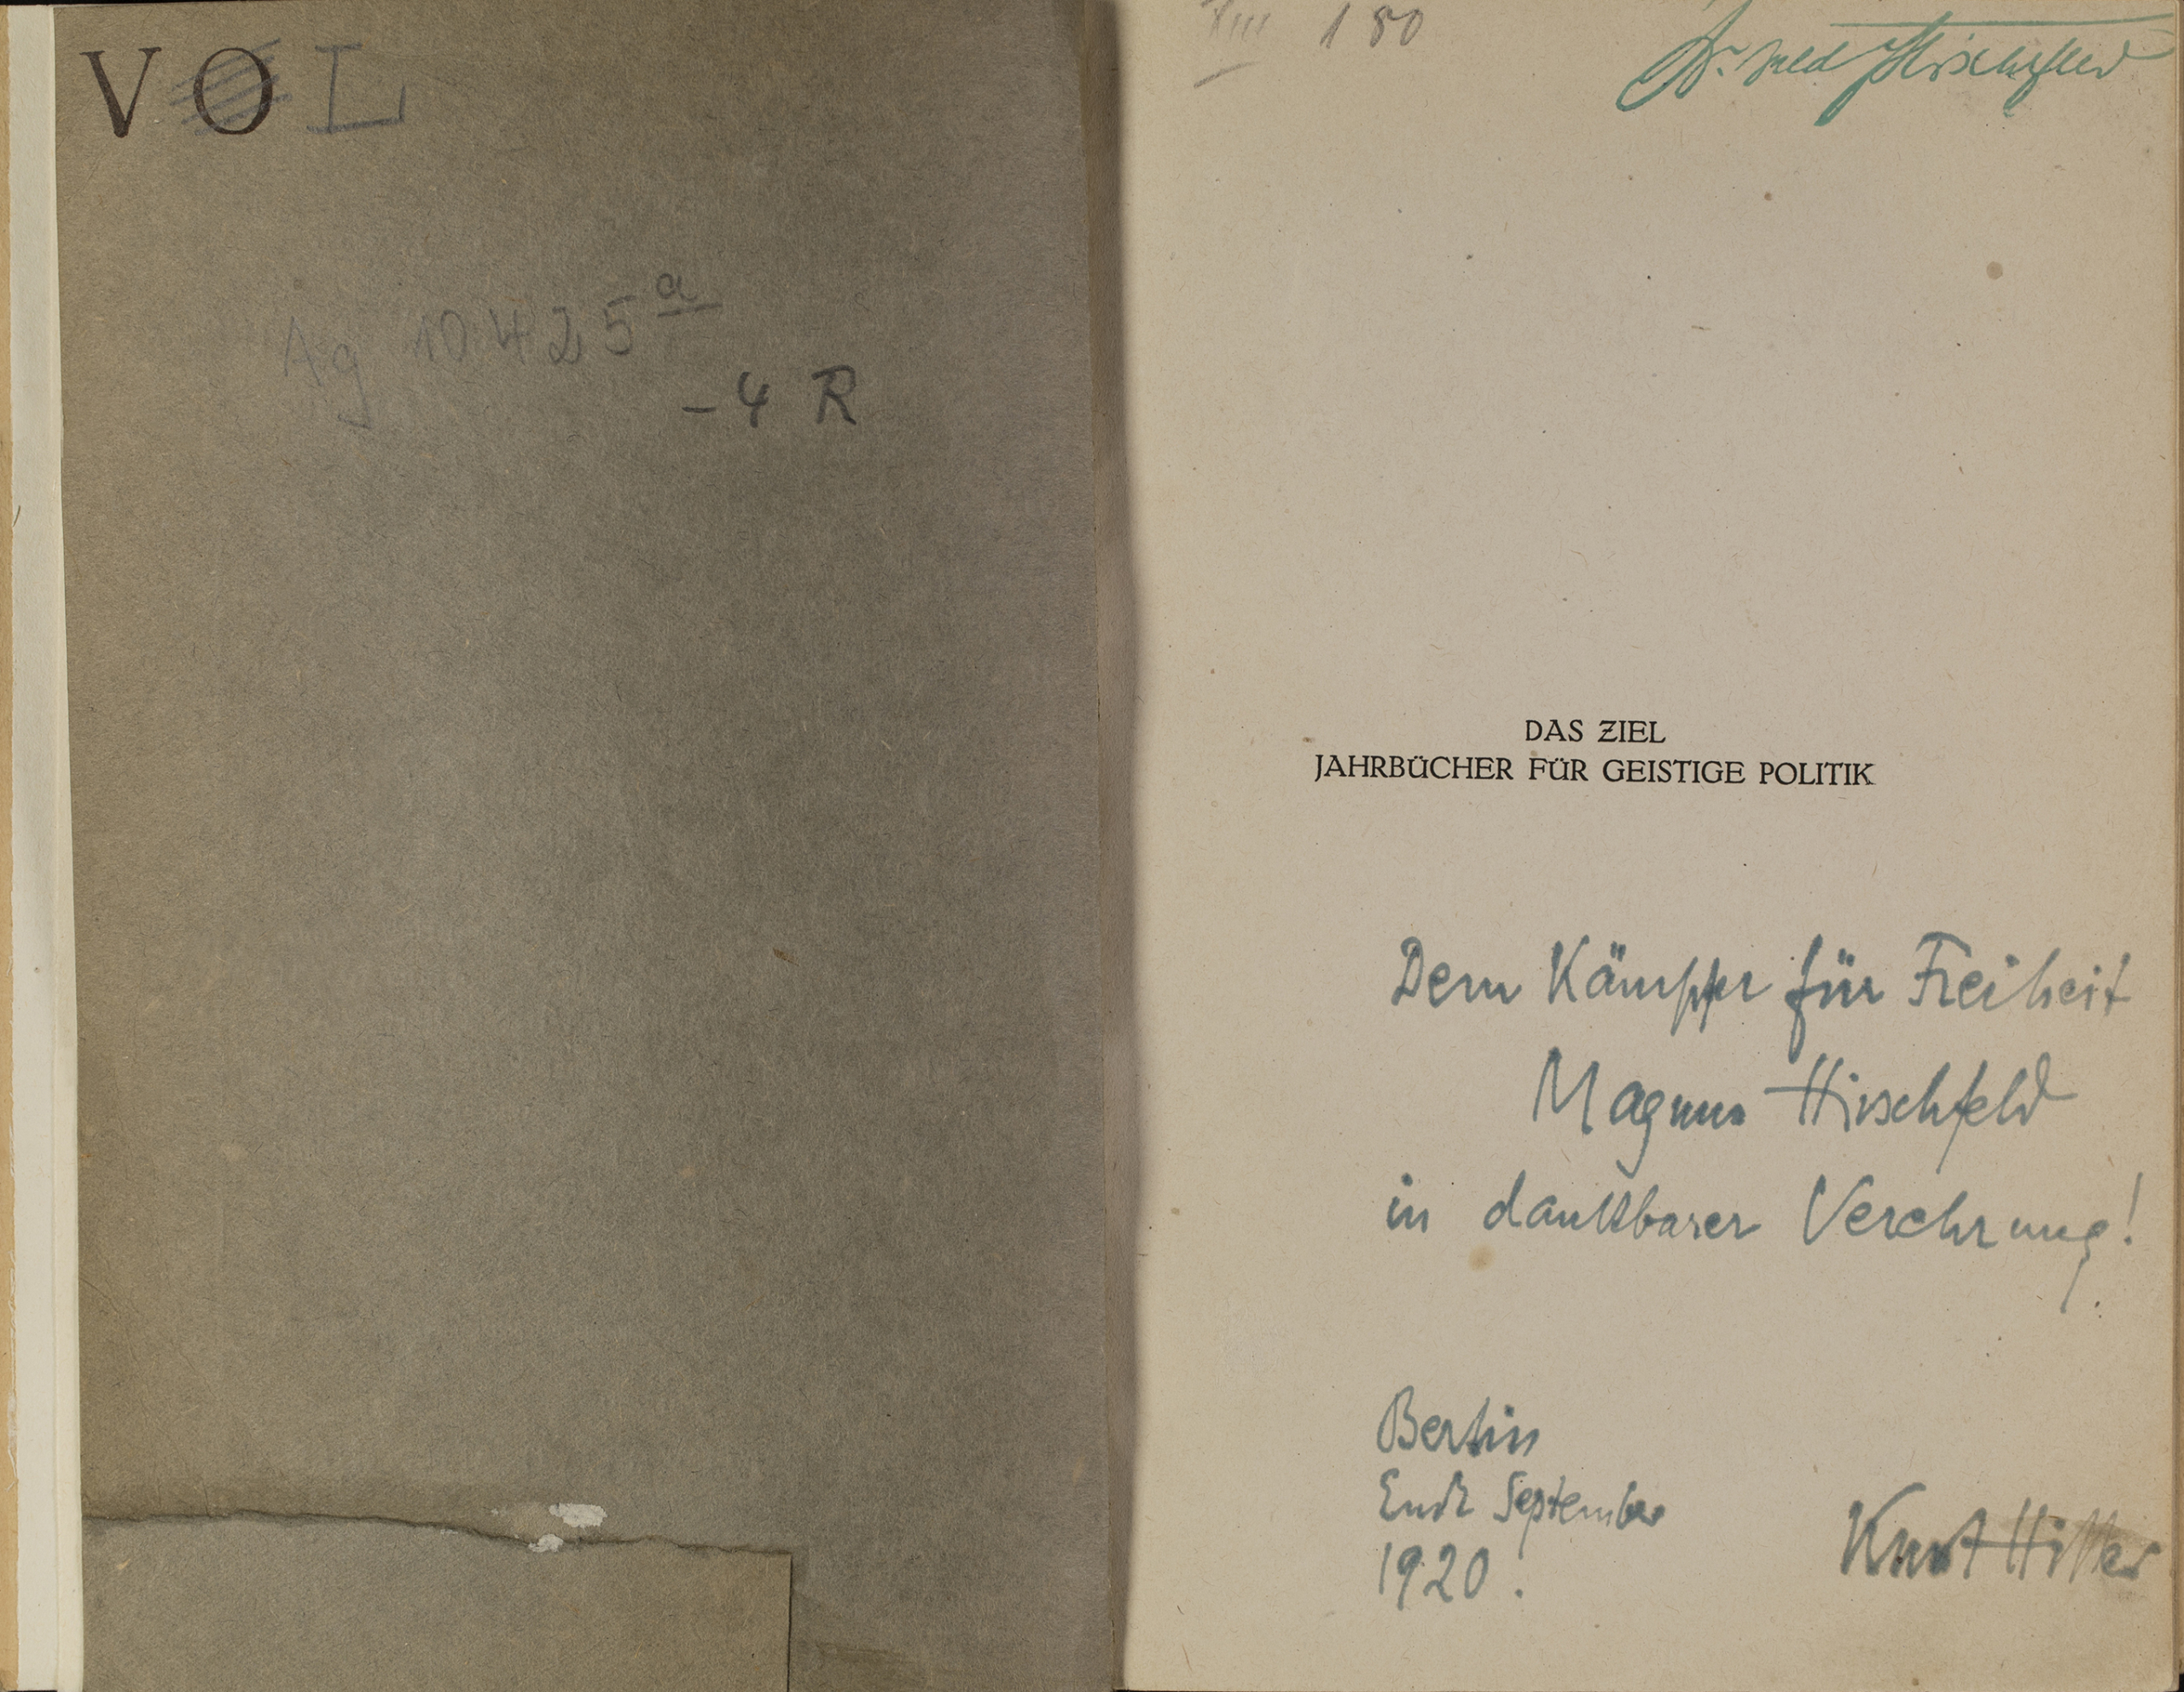 Das Ziel. Jahrbücher für geistige Politik. München: Kurt Wolff, 1920. Signatur: Ag 10425-4.1920